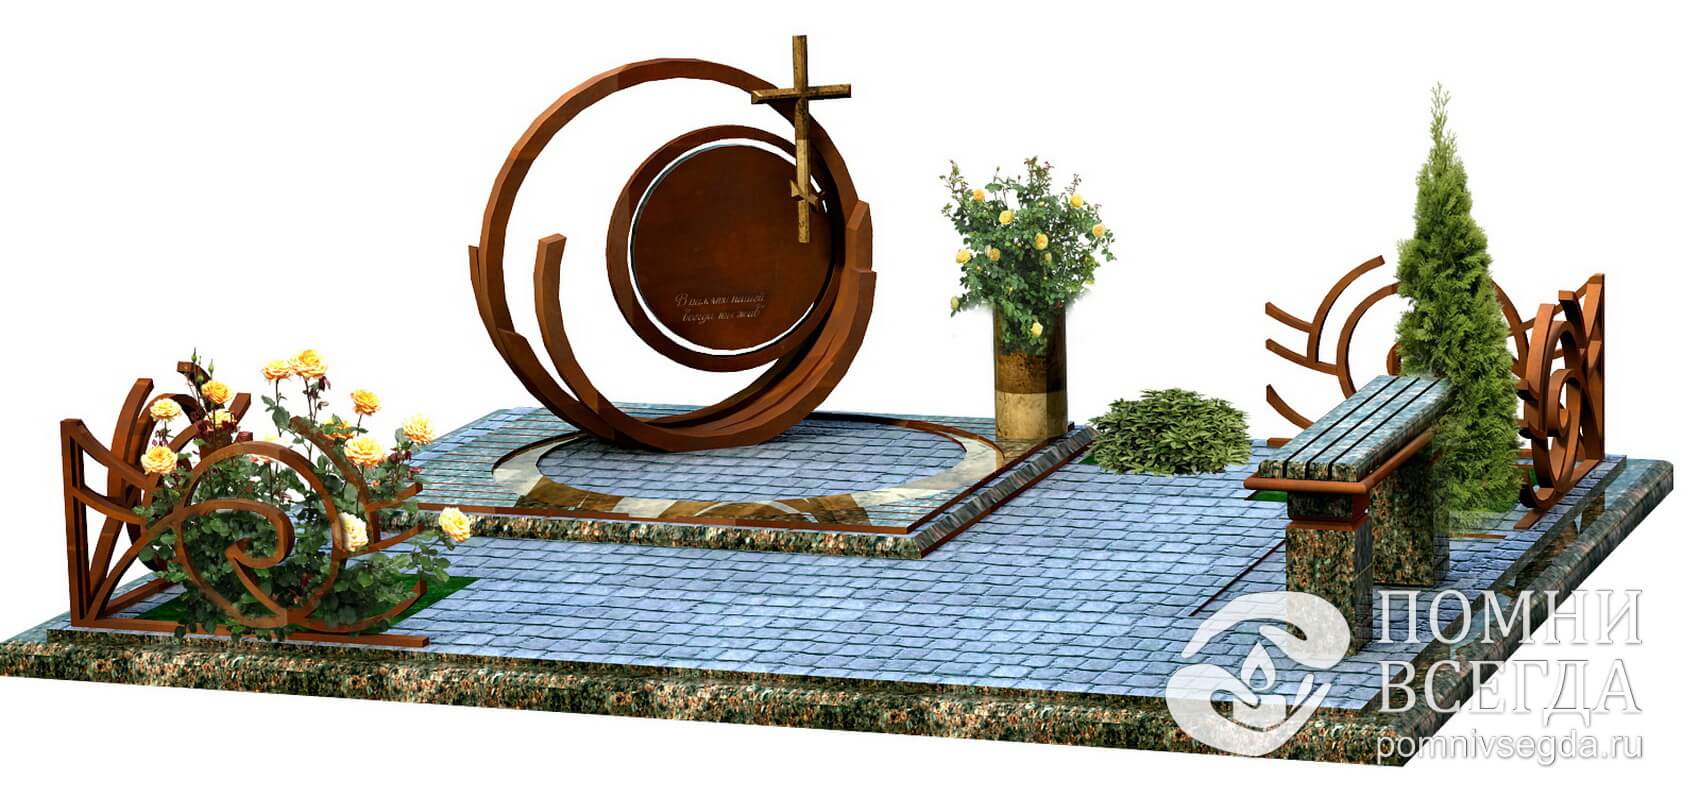 Круглое надгробье сложной формы с фигурой креста в правой части